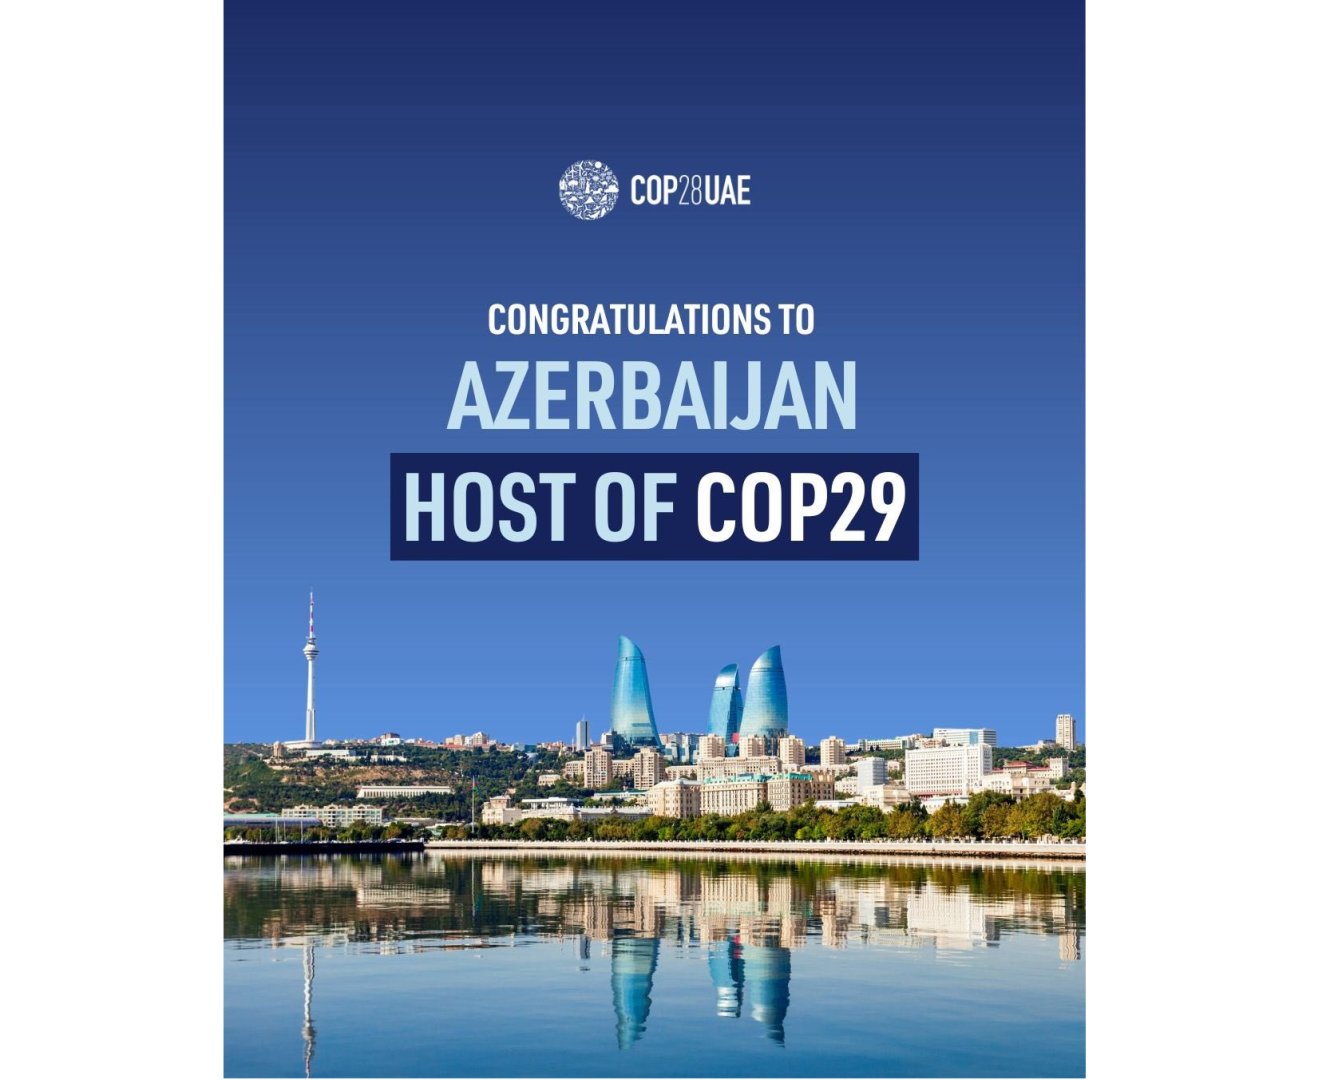 COP28 Presidency congratulates Azerbaijan for being chosen to host COP29